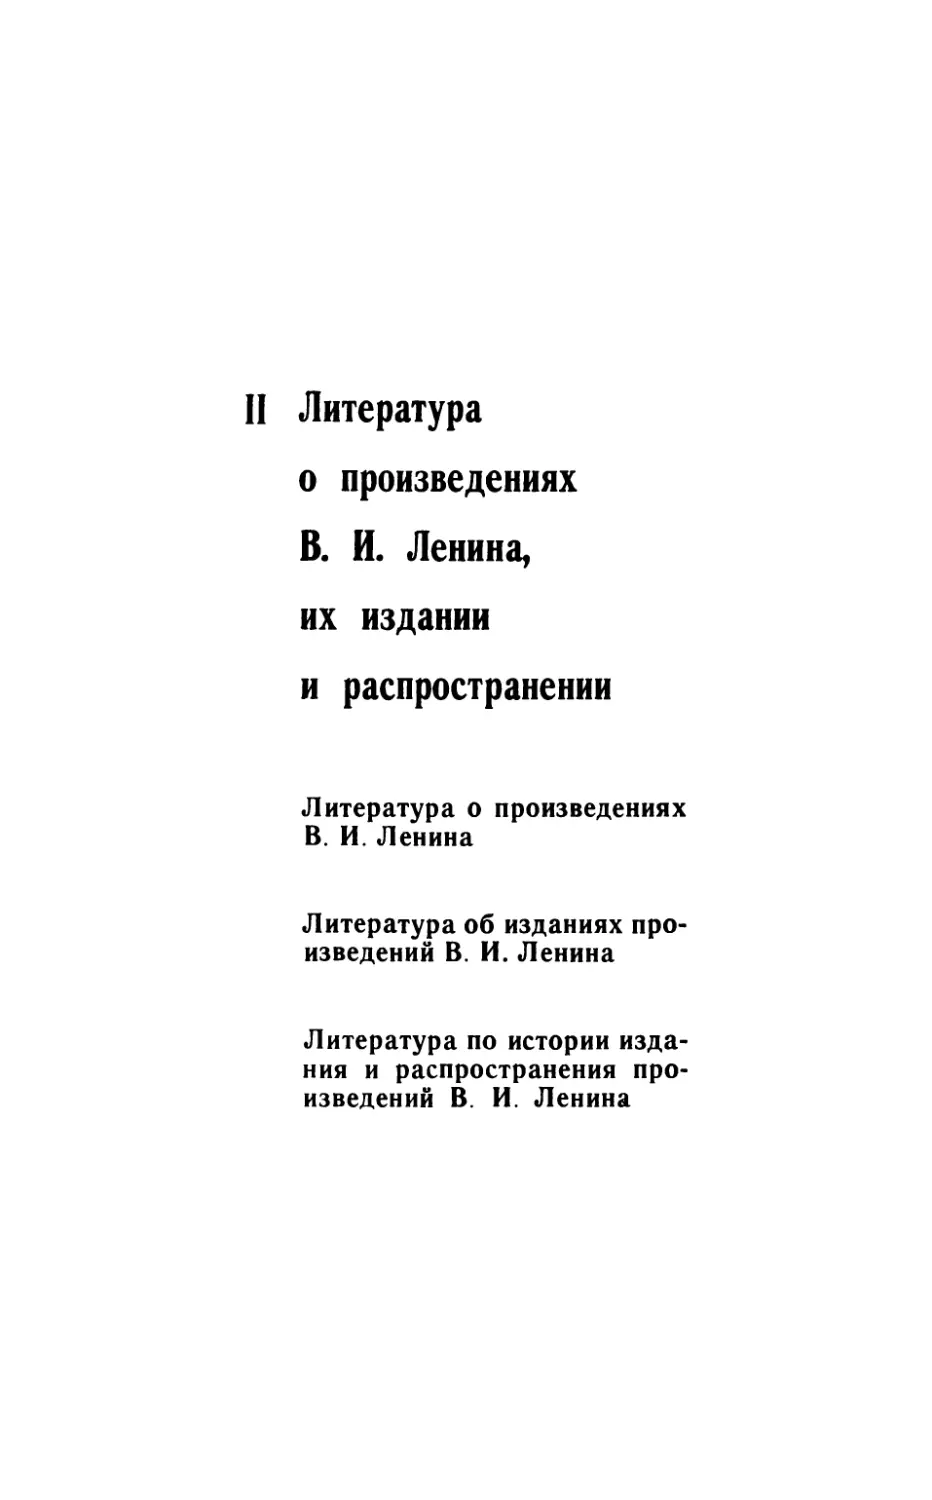 II. Литература о произведениях В. И. Ленина, их изданий и распространении